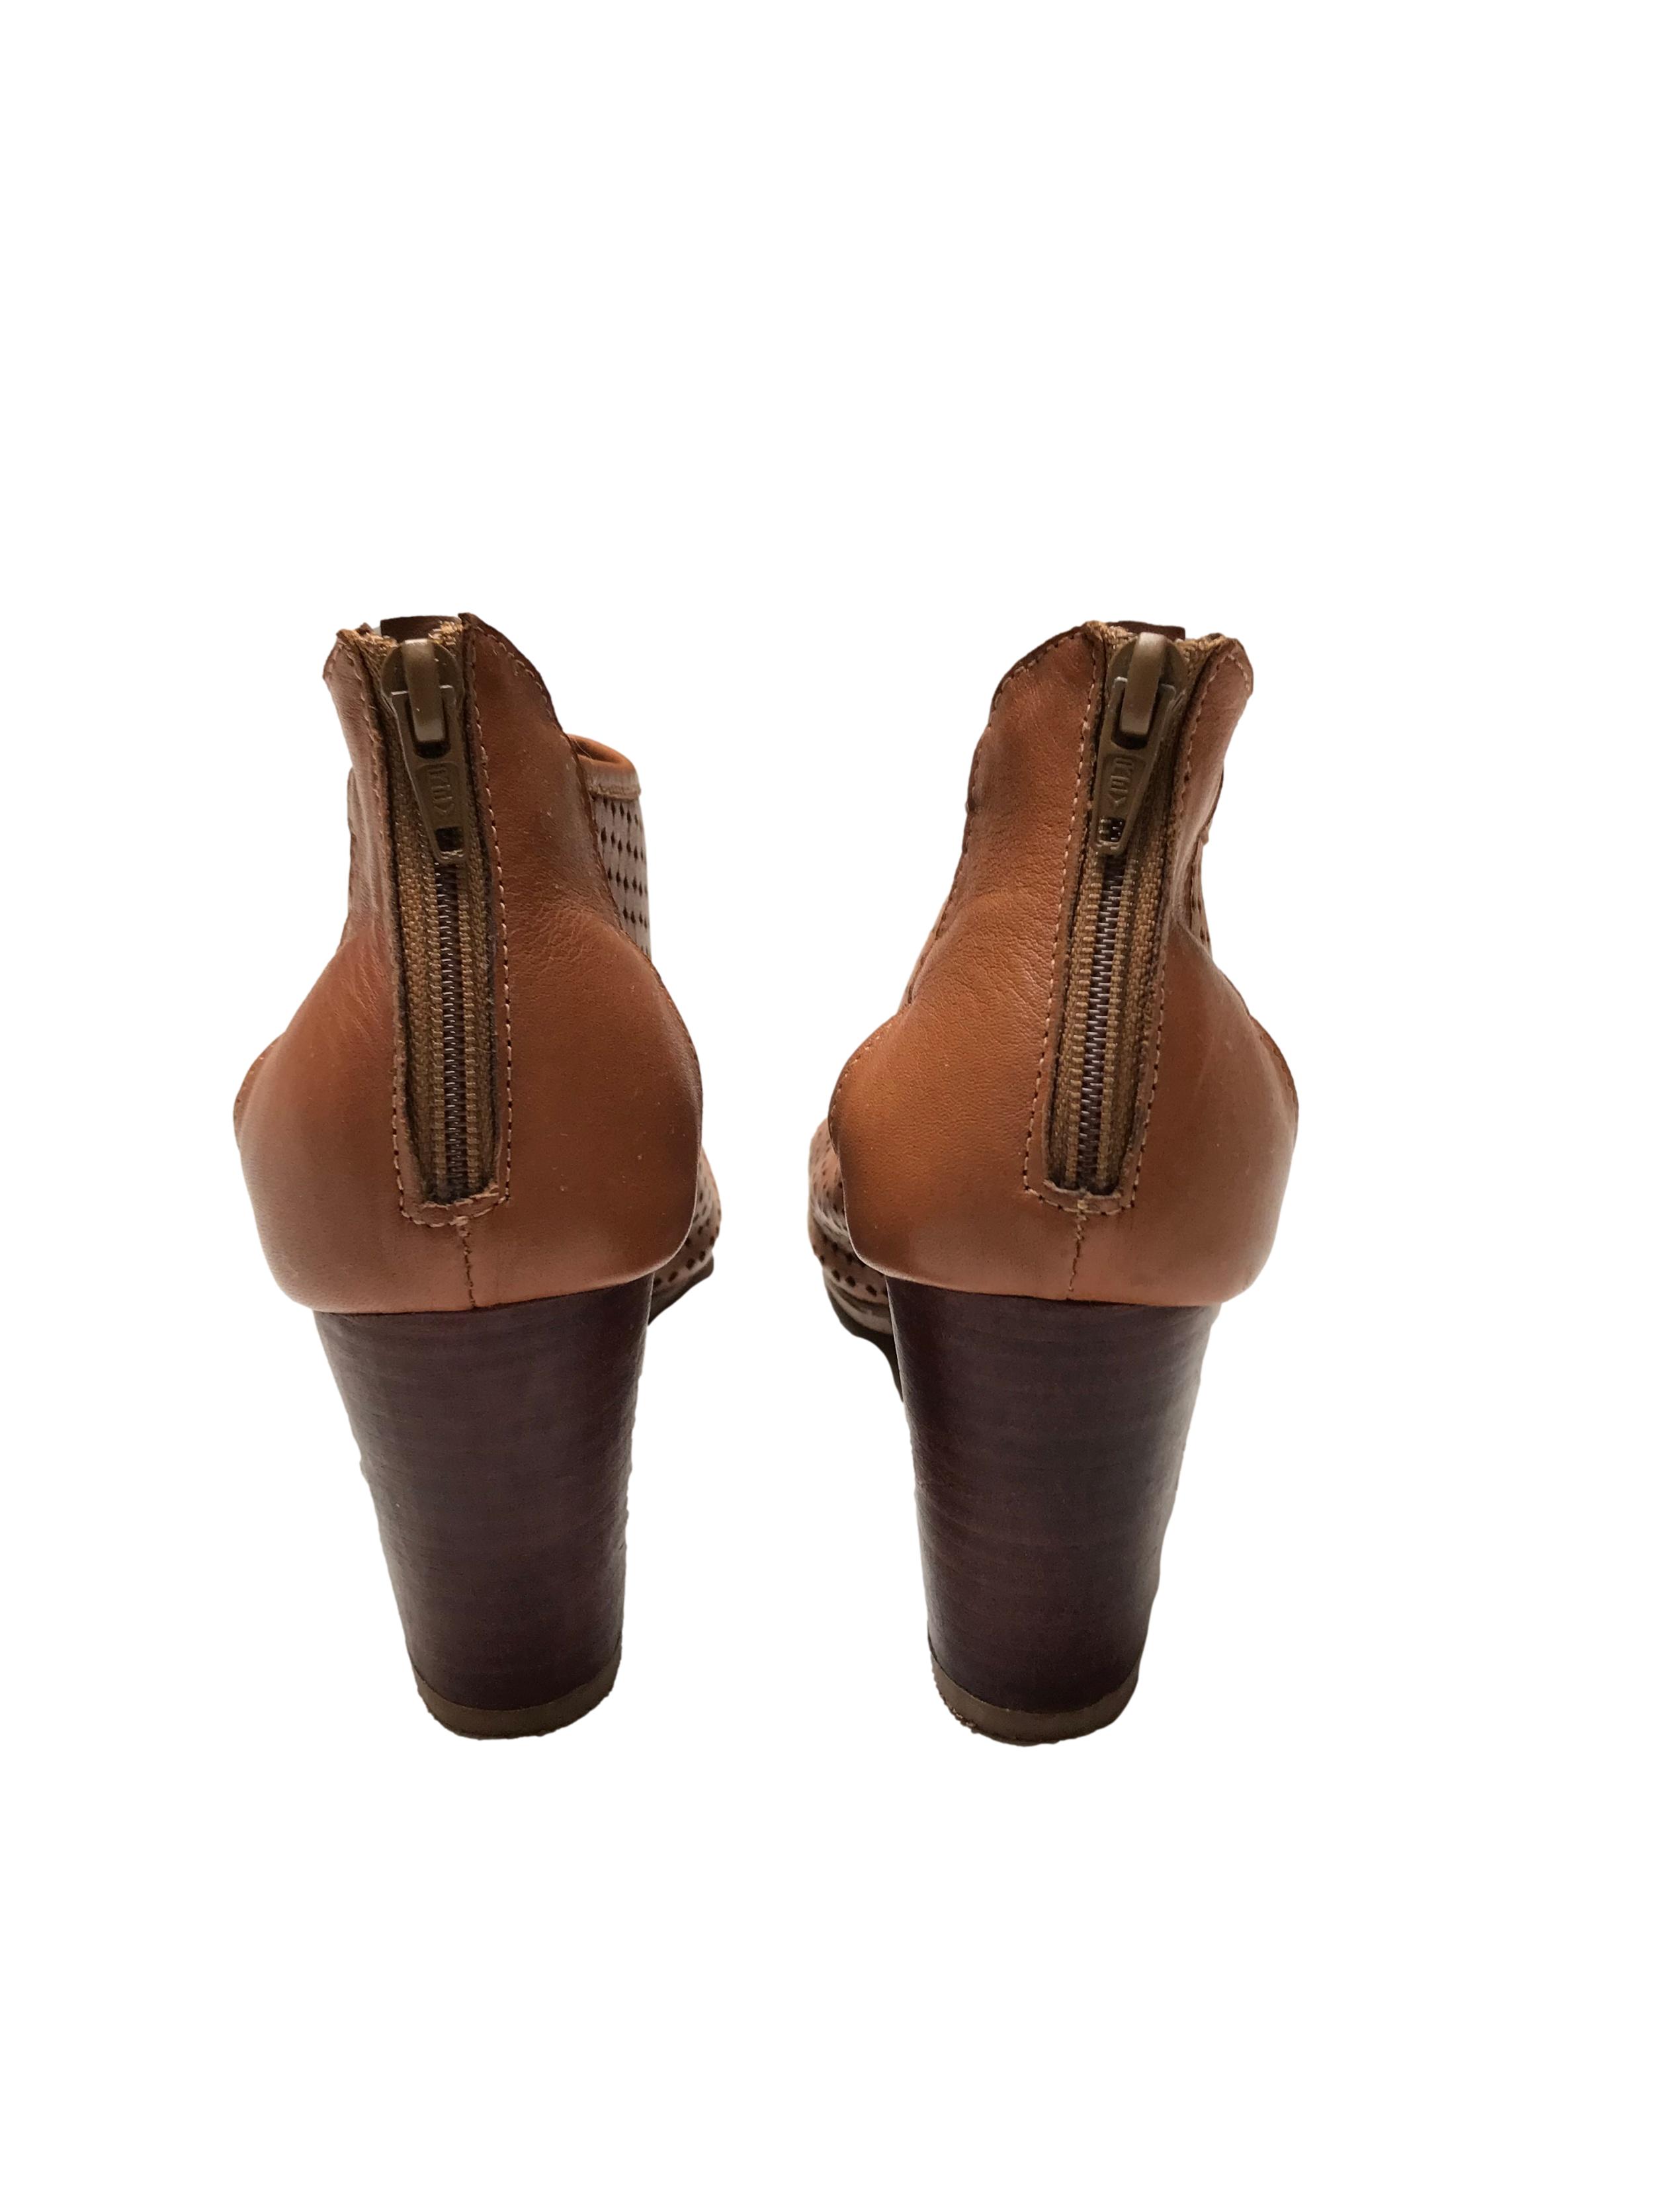 Zapatos Bata de cuero camel calado, punta abierta y cierre en  el talón, taco grueso 7cm. Estado 9/10. Precio original S/ 159